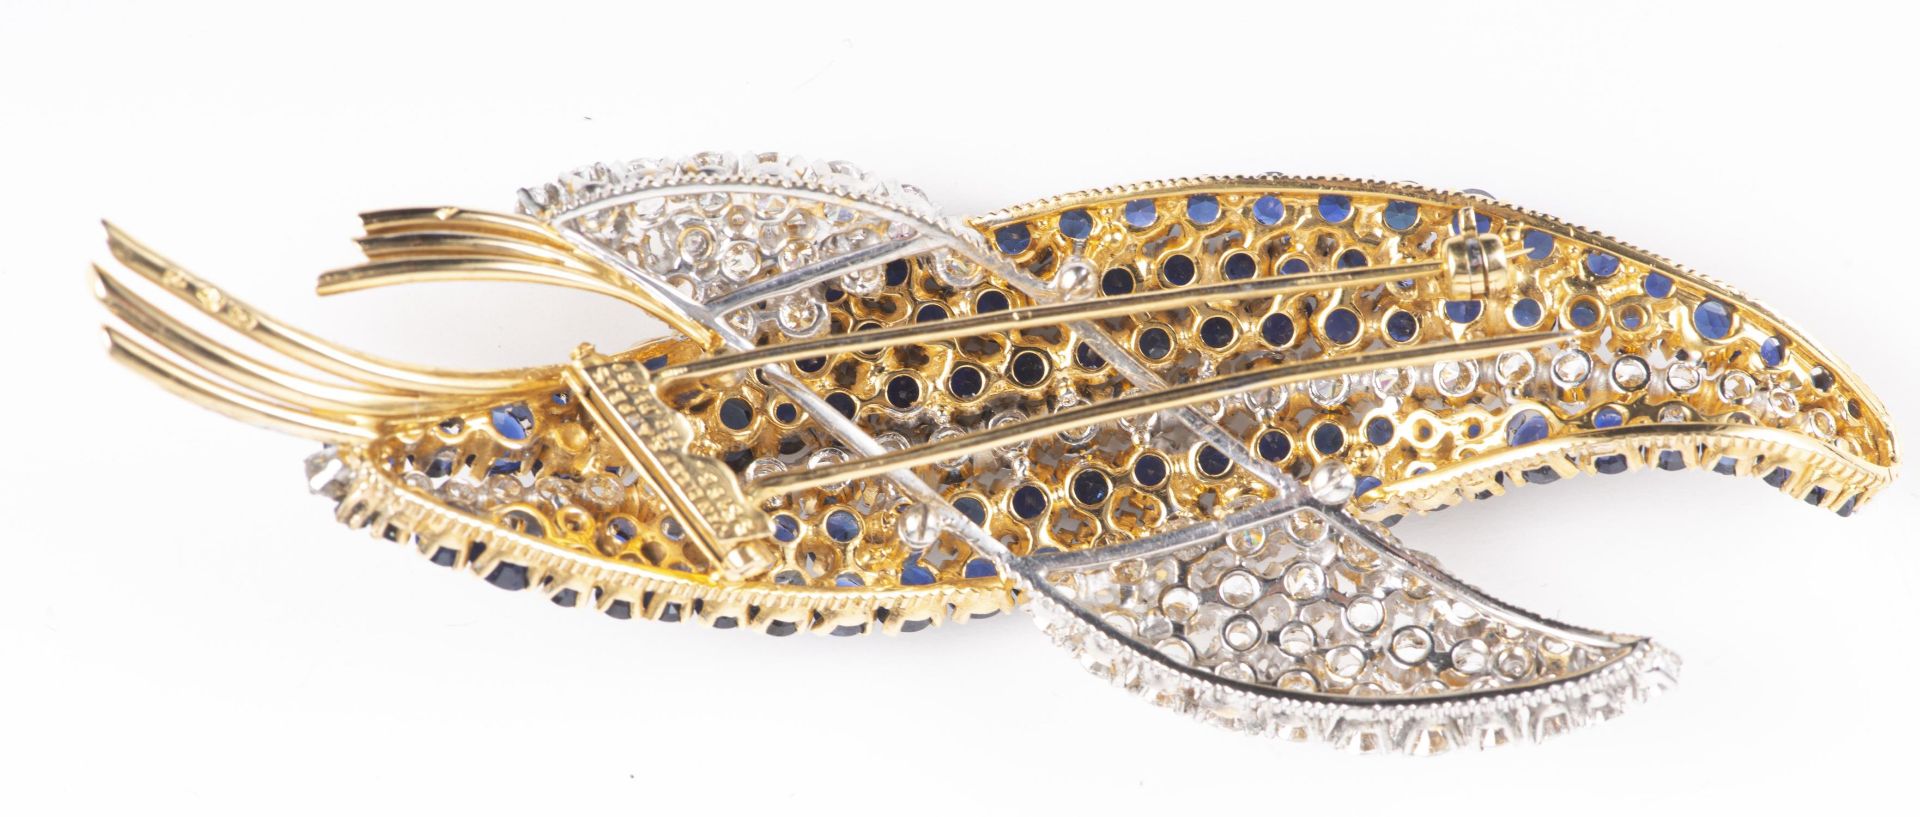 VAN CLEEF & ARPELS, broche double feuille en or et platine avec diamants et saphirs - Image 5 of 18